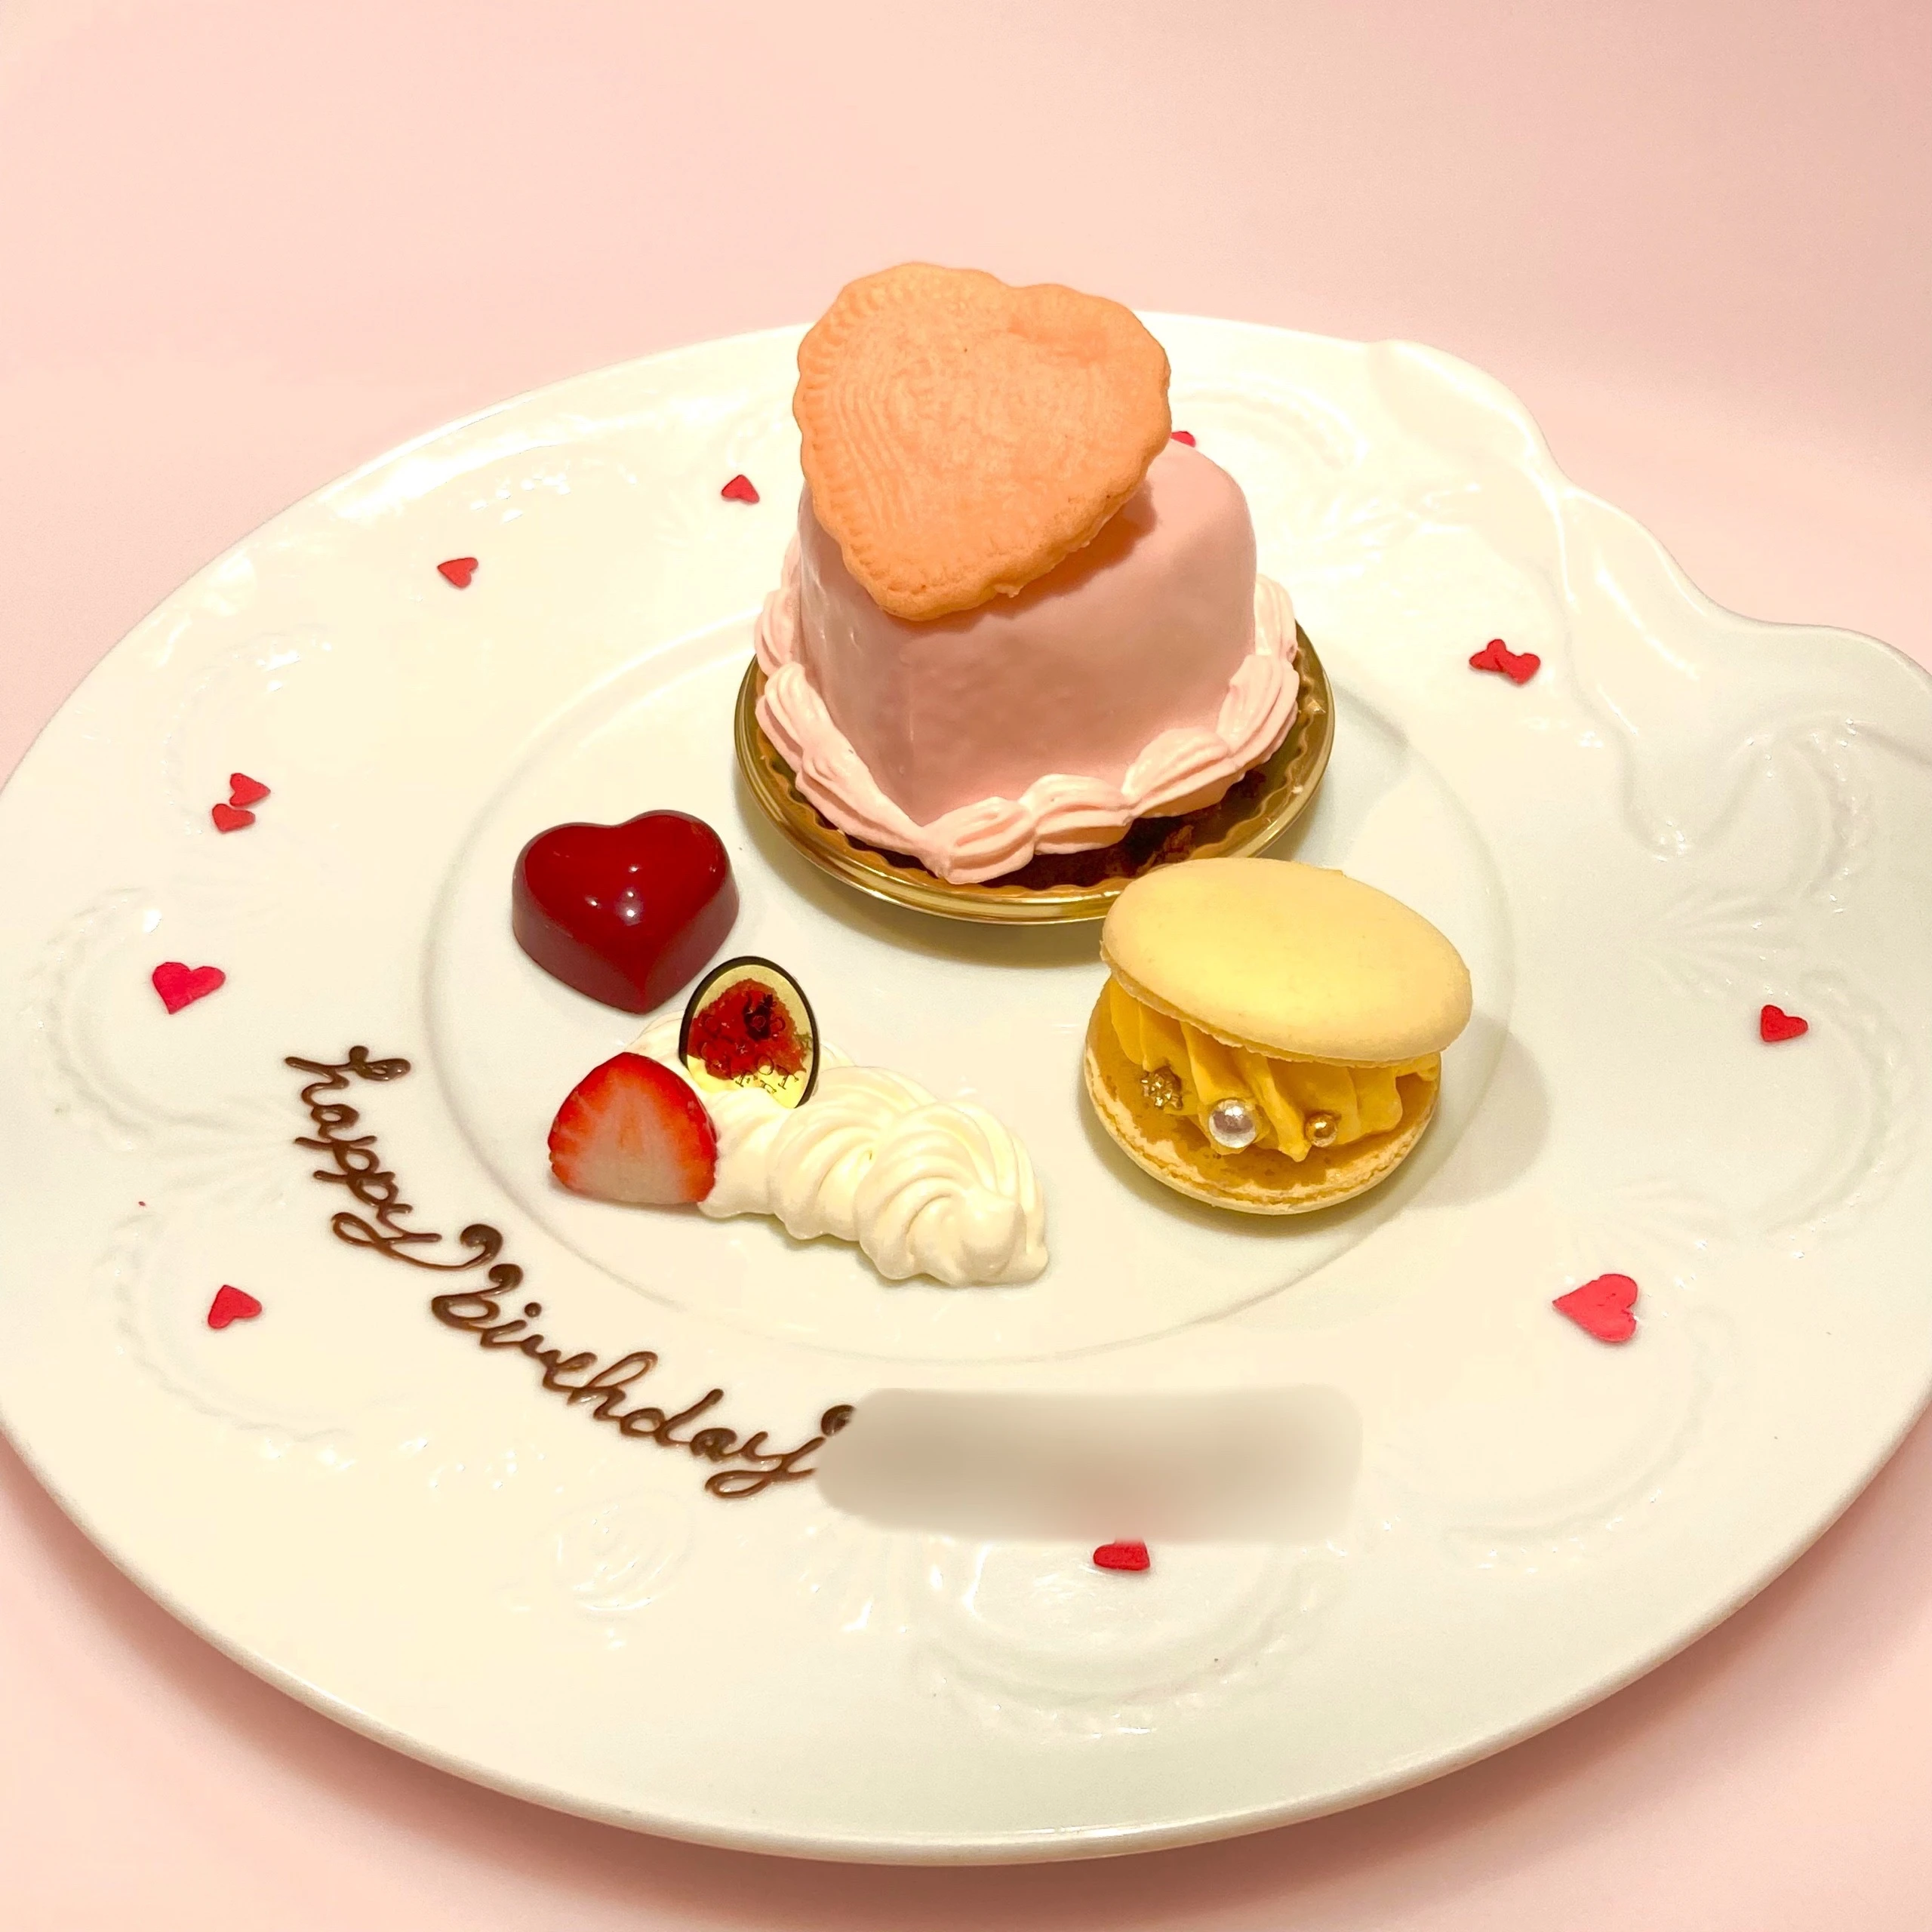 Q-pot CAFE.「Dreamy Heart ケーキプレート」。ピンクのハートケーキにレモンのマカロン。